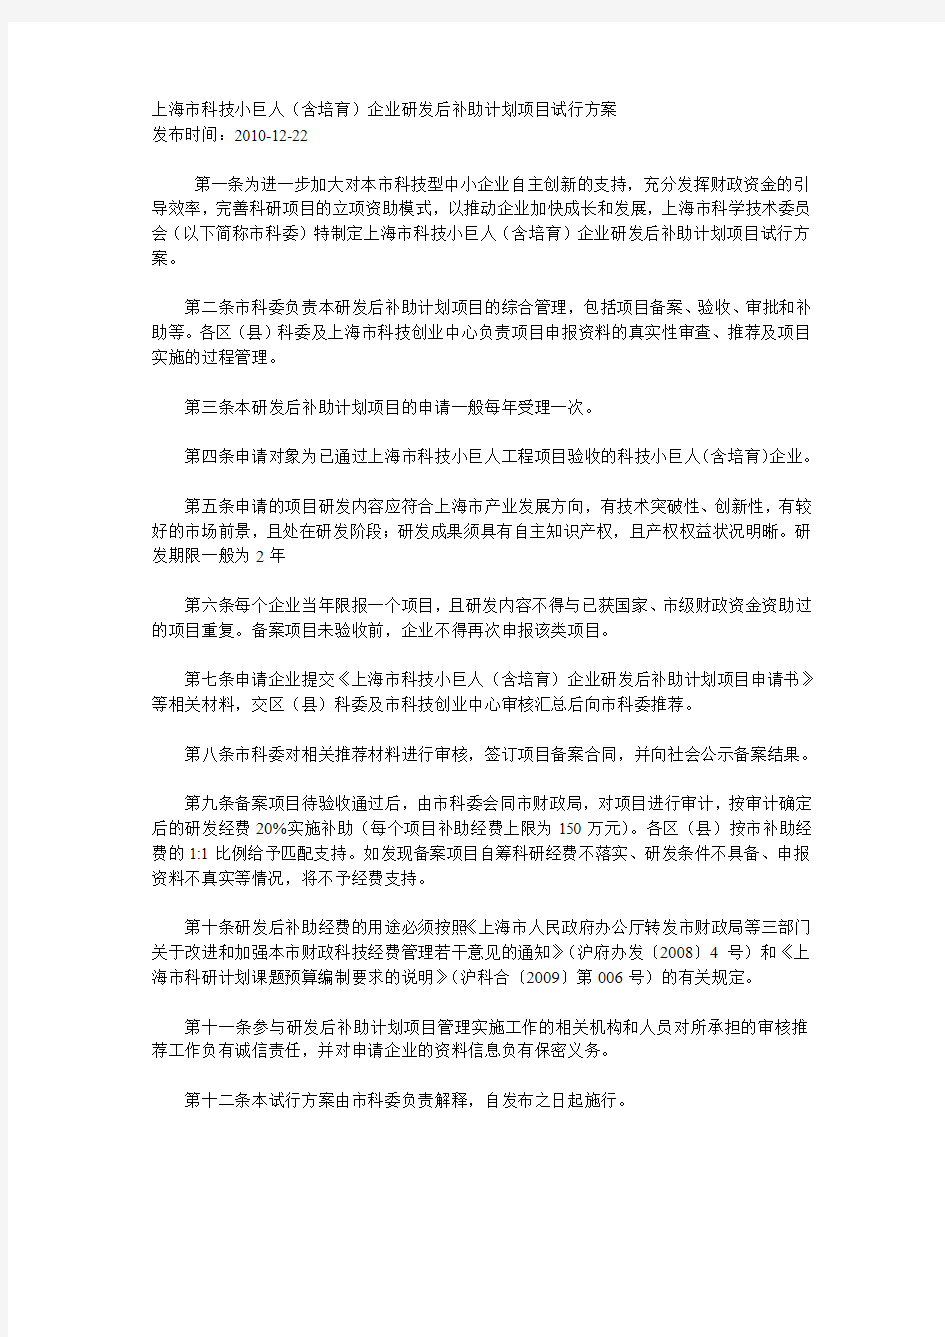 上海市科技小巨人政策法规